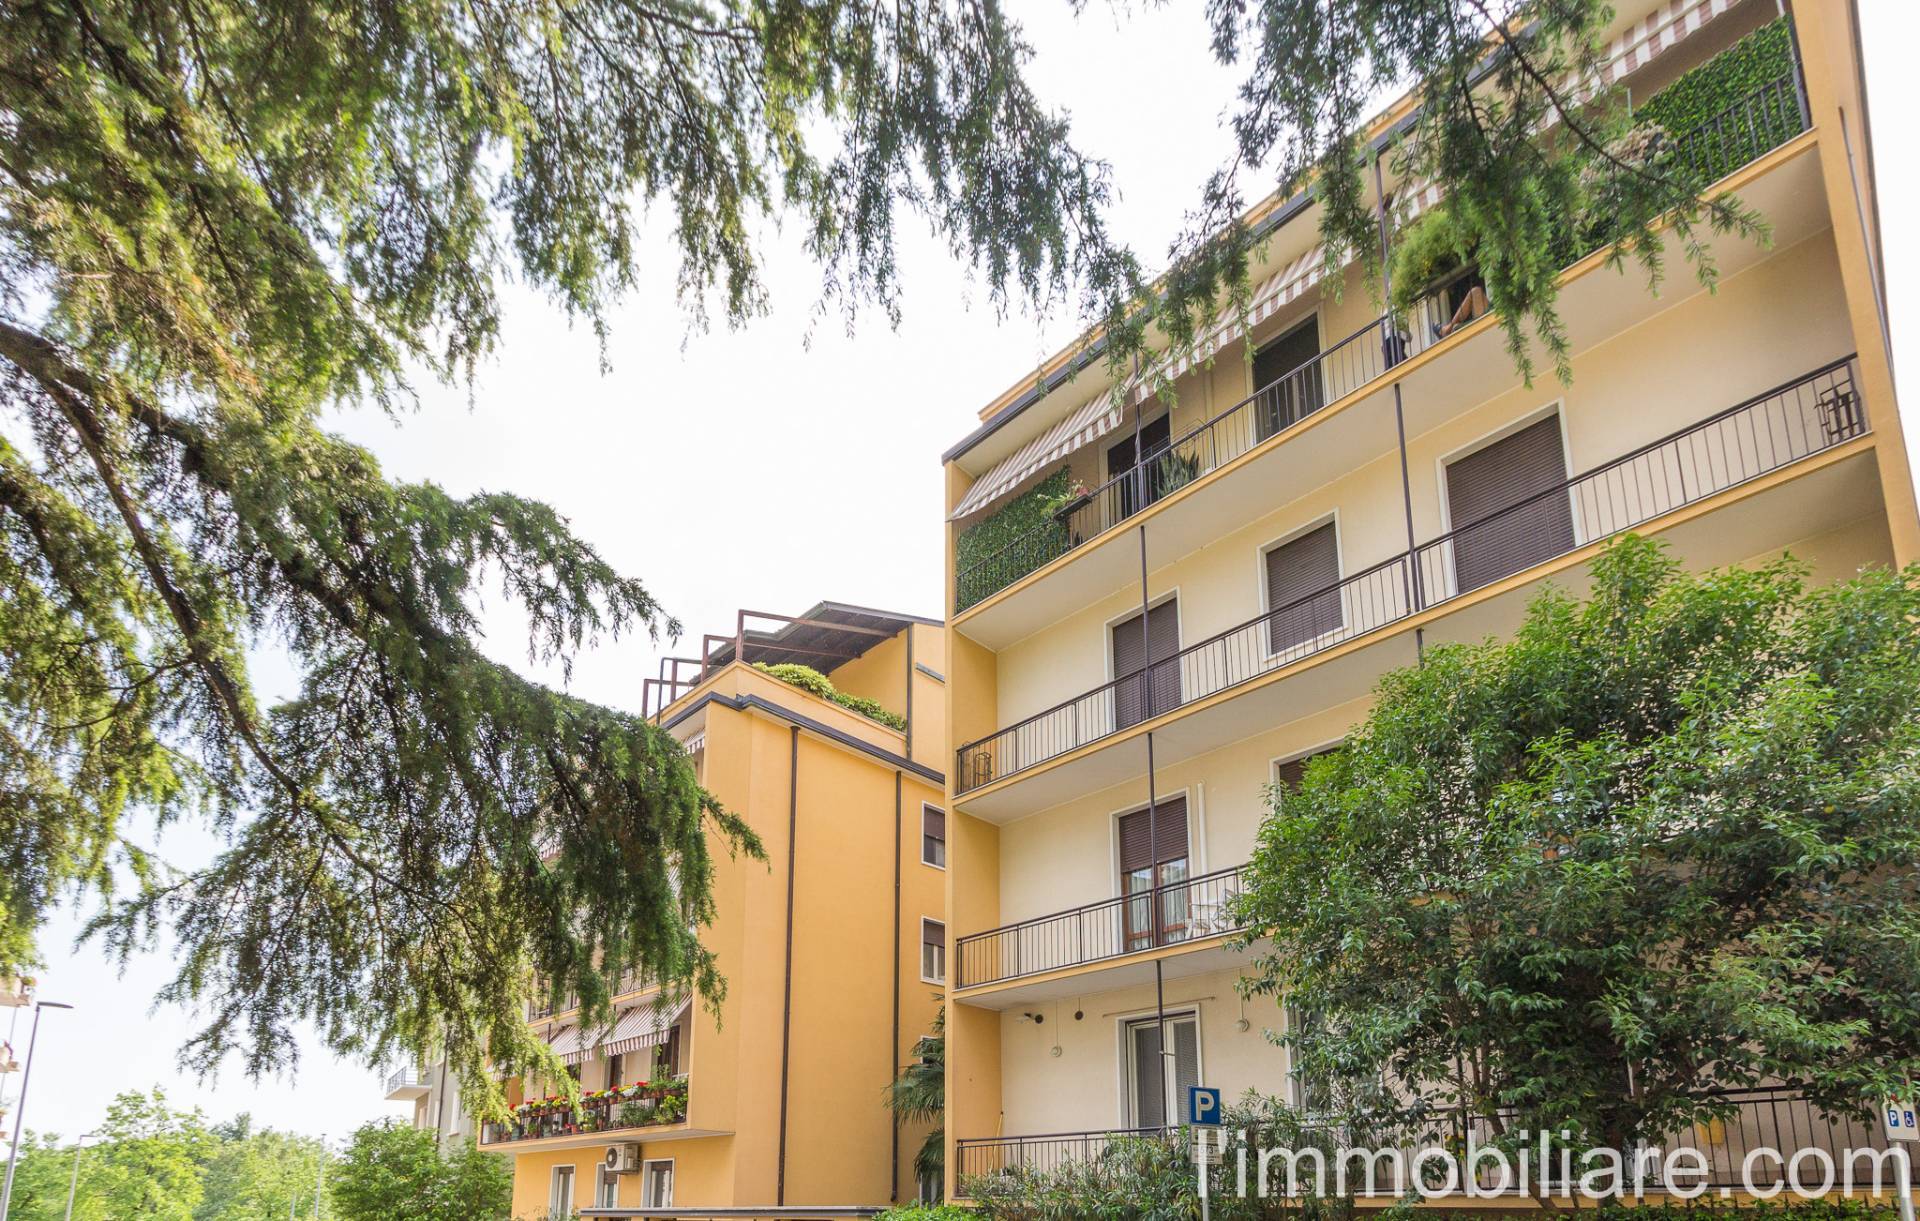 Appartamento in Vendita a Verona: 2 locali, 55 mq - Foto 28